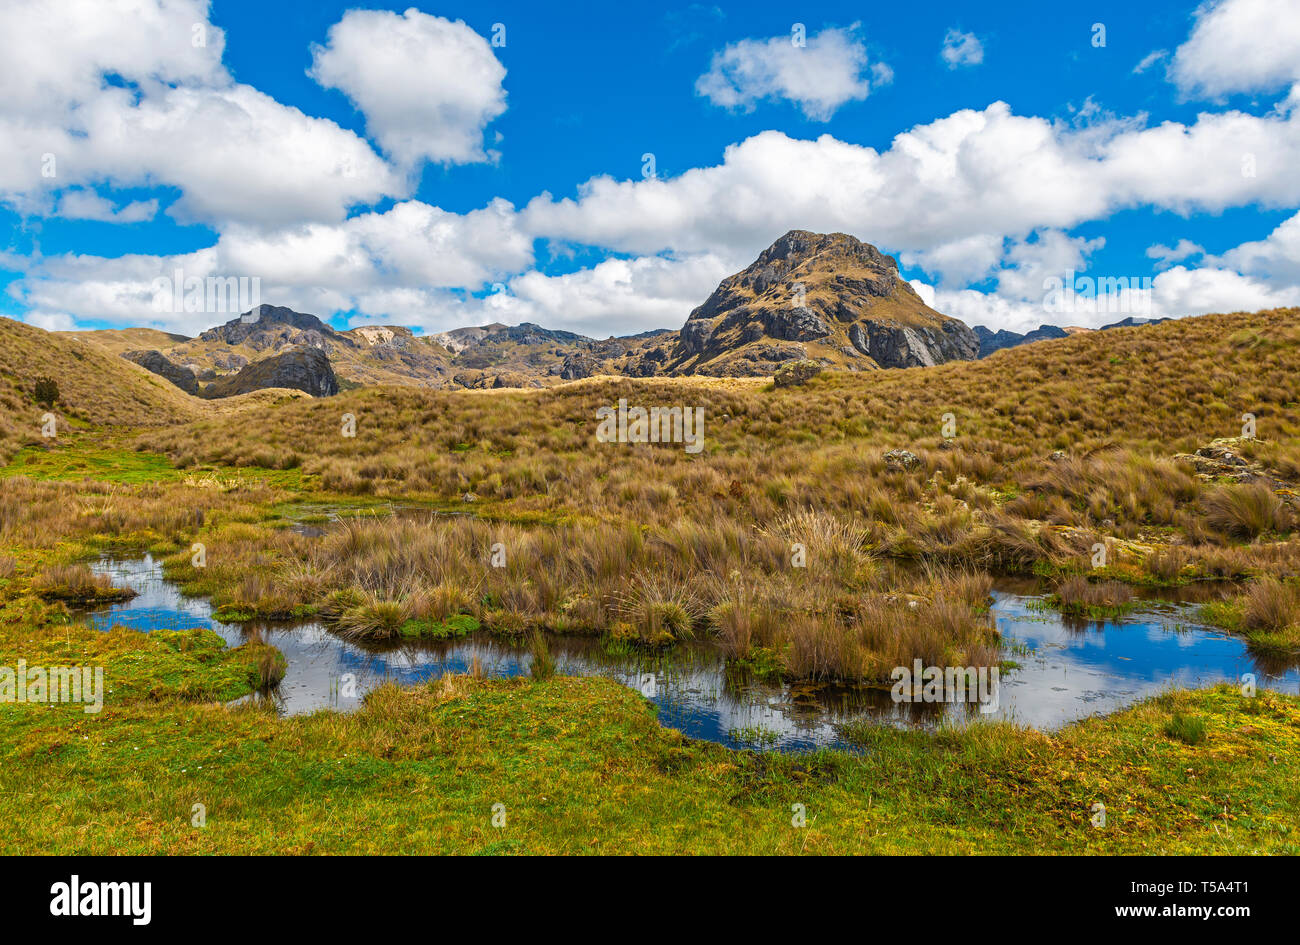 Photographie de paysage les marais et lagunes dans les montagnes des Andes à l'intérieur du parc national Cajas ville près de Cuenca, Équateur. Banque D'Images